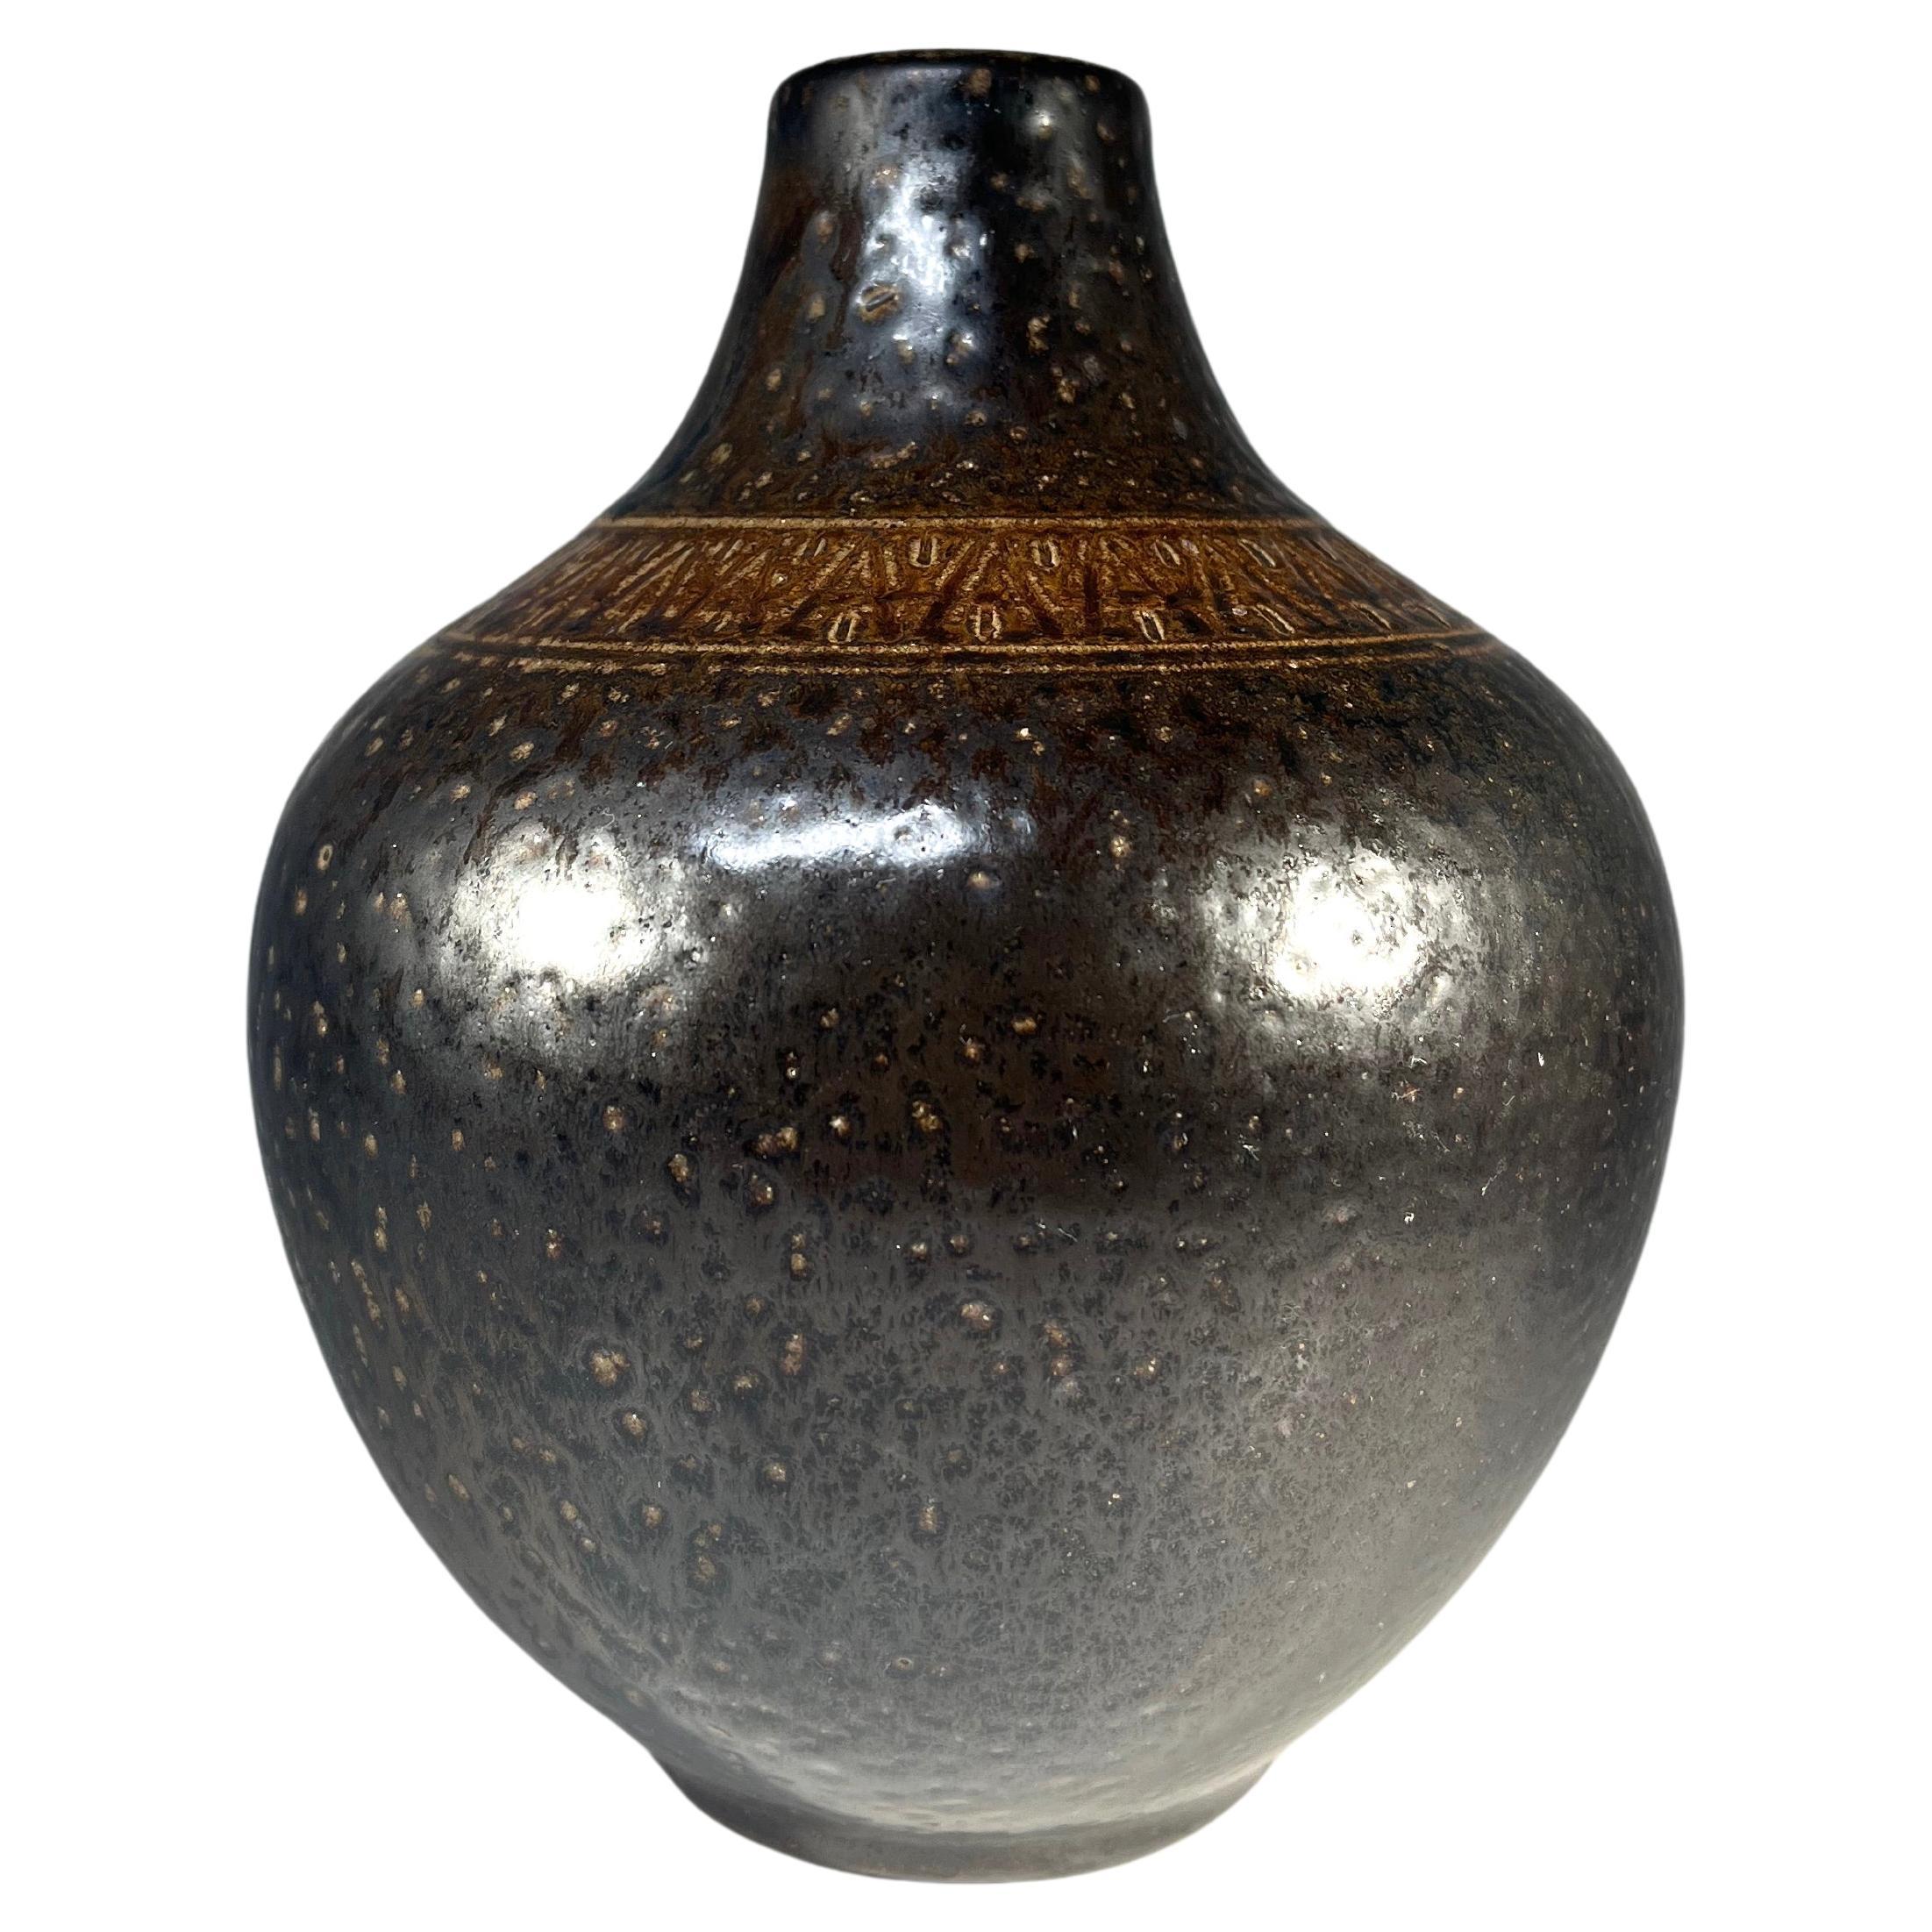 Arthur Andersson für Wallåkra, Schweden, geformte Vase aus Steinzeug um 1950